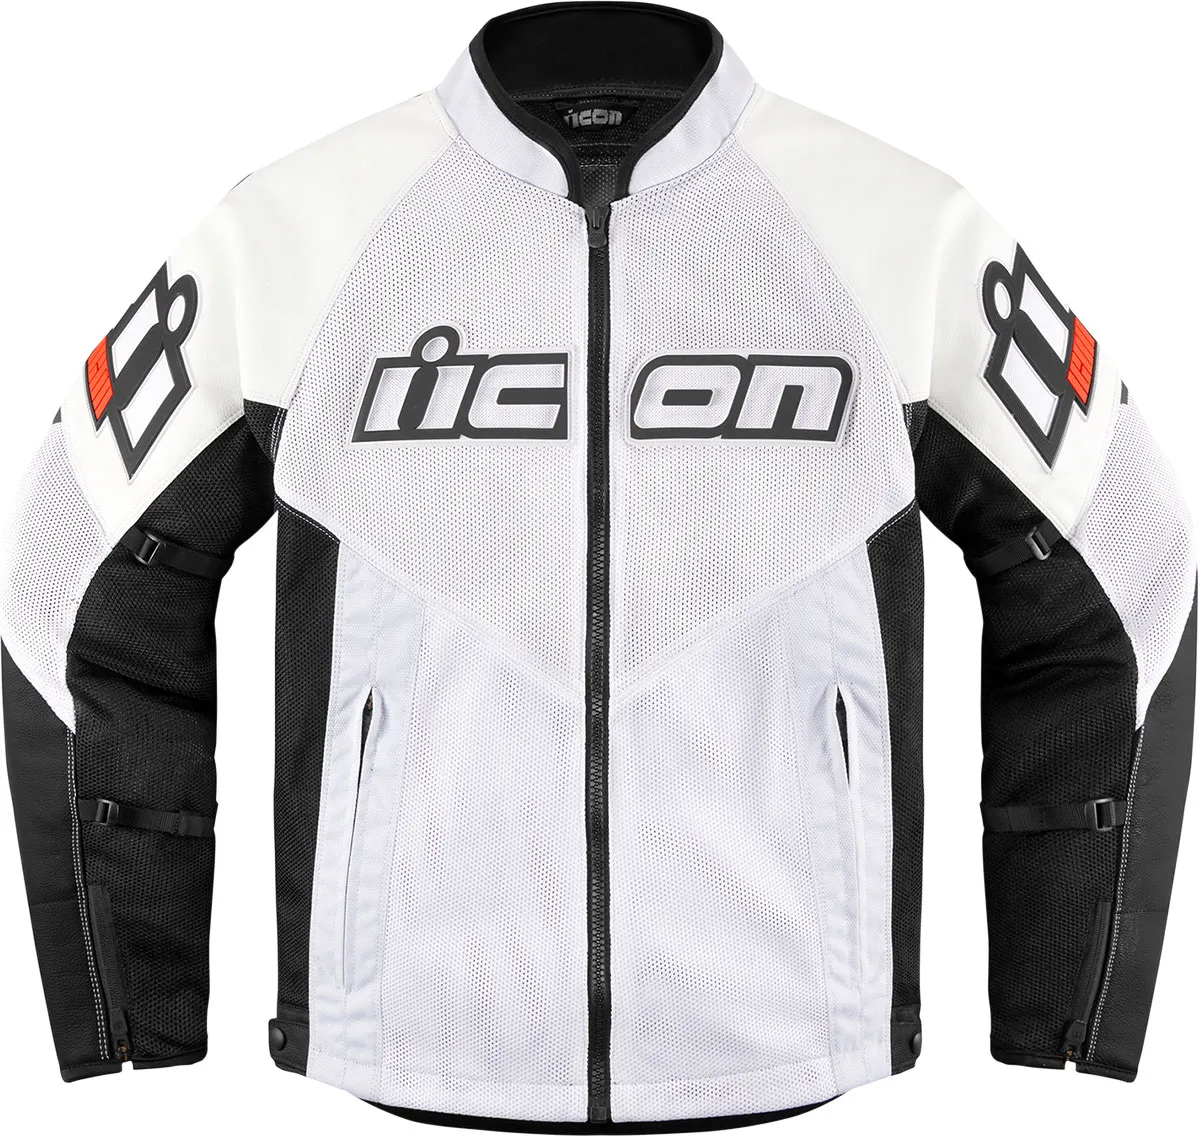 Icon Mesh AF leather/textile jacket, Article de 2e choix - Blanc/Noir - M